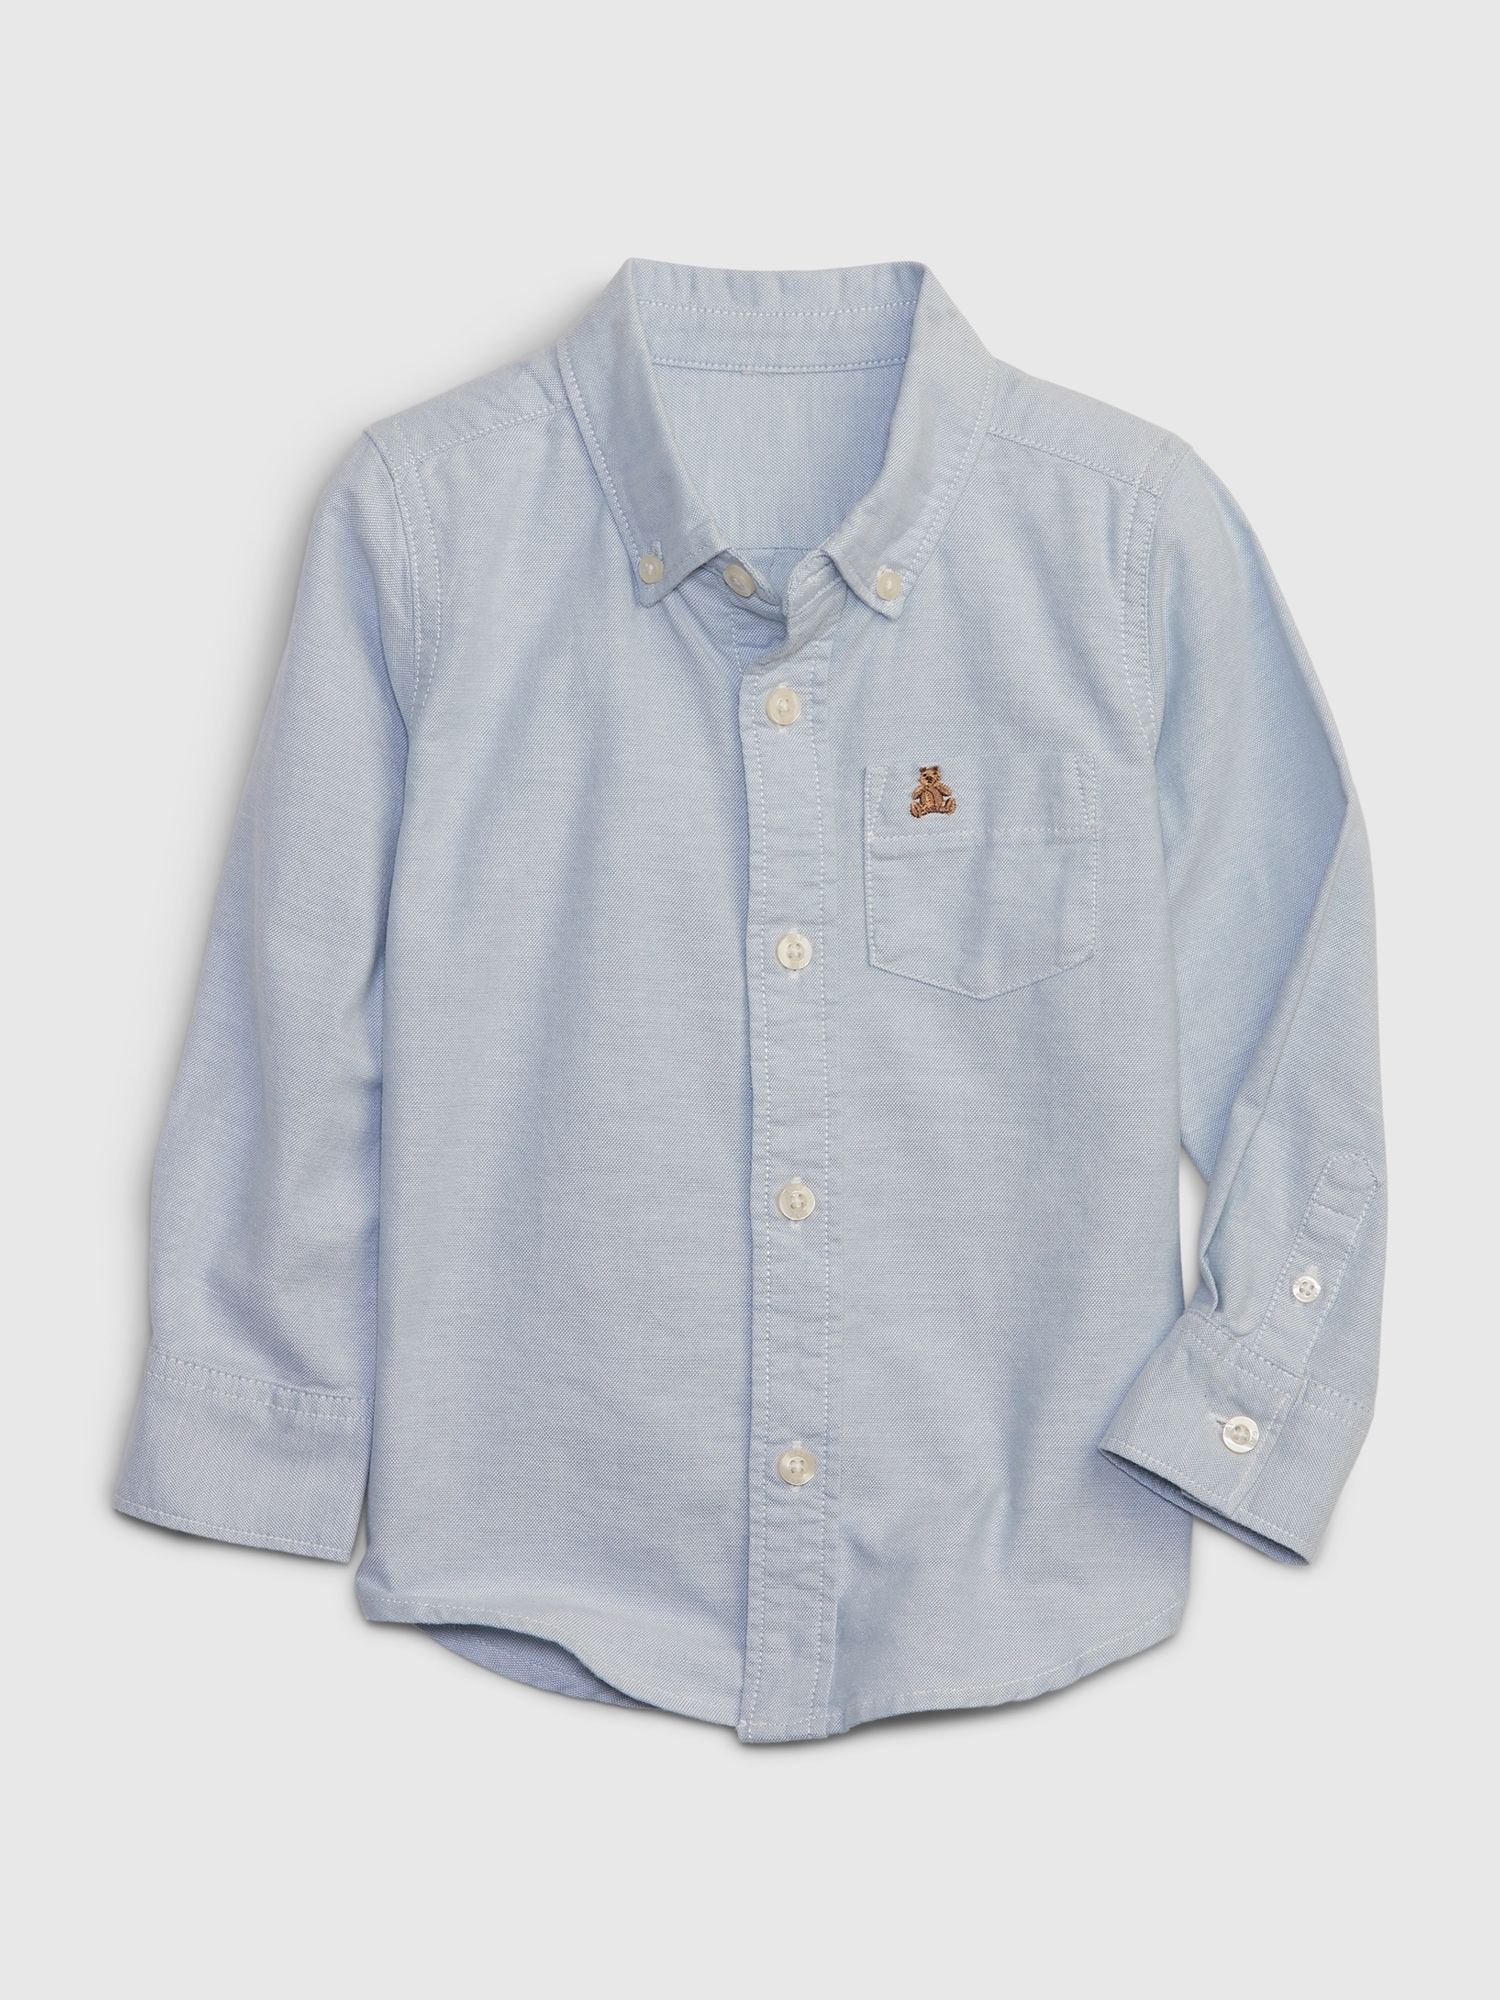 Gap Toddler Cotton Oxford Shirt